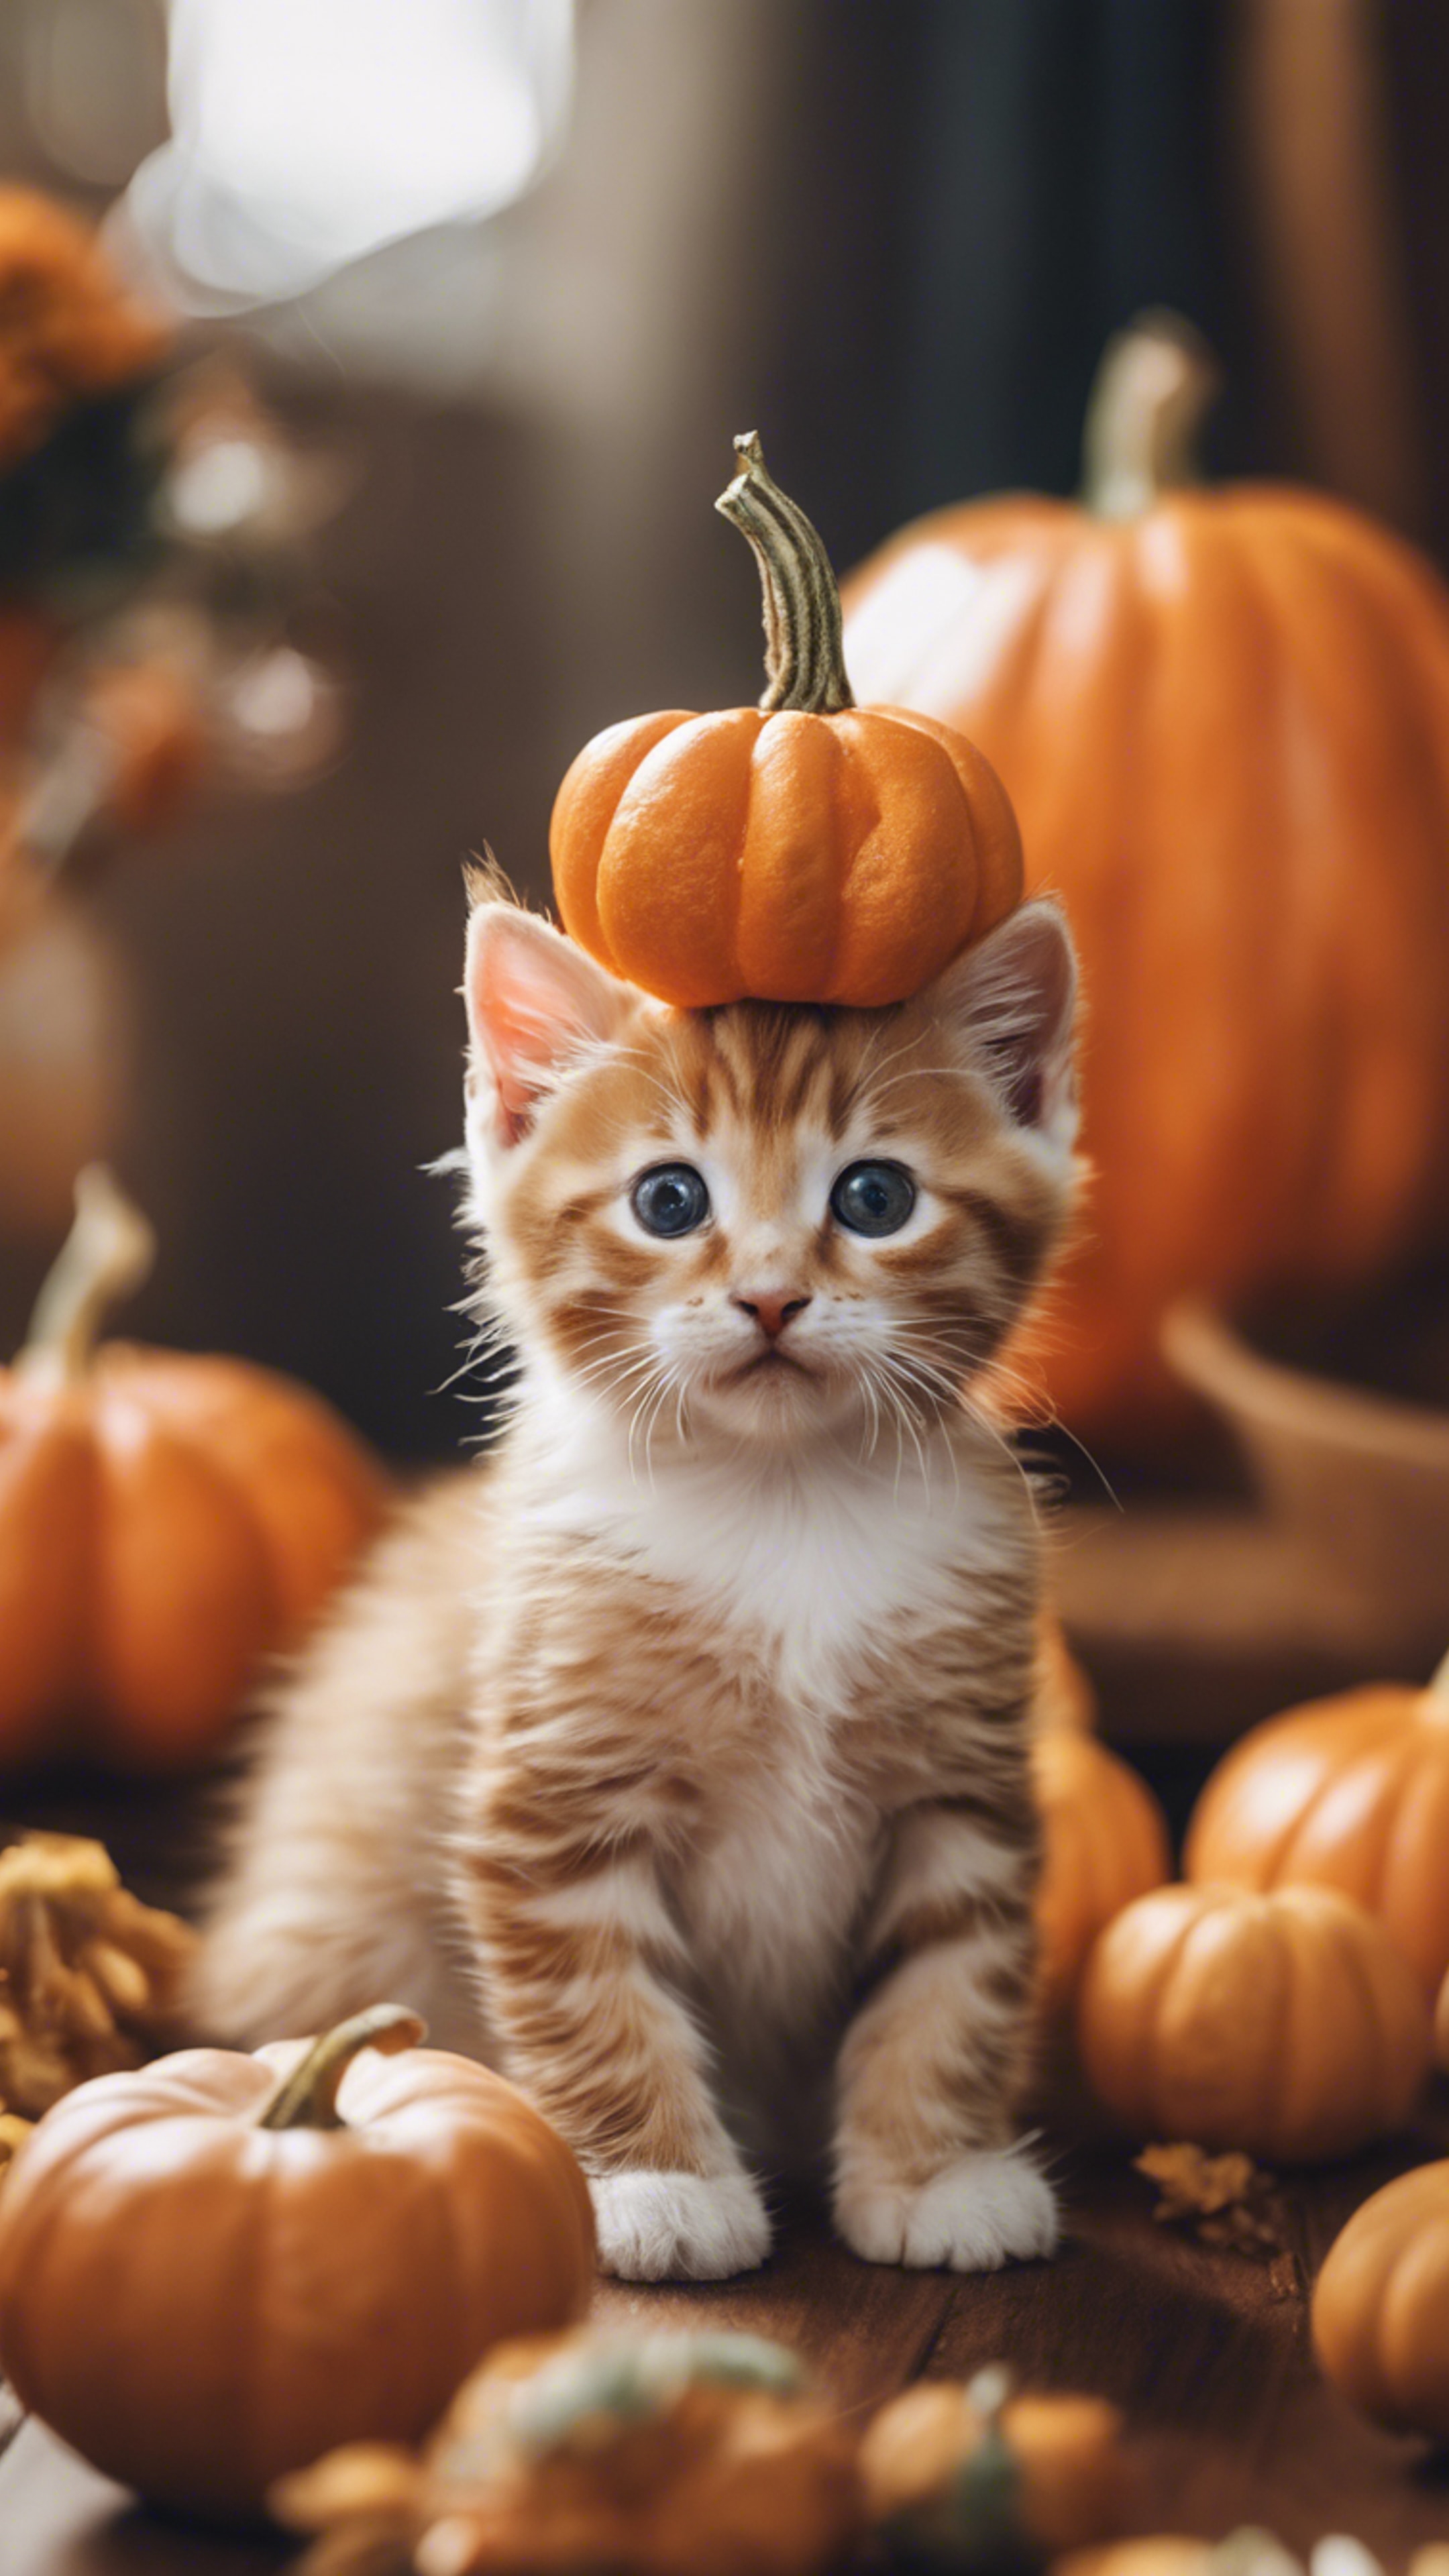 An orange tabby kitten dressed up as a tiny pumpkin for Halloween festivities. 墙纸[a5205dadd28d41bcbdef]